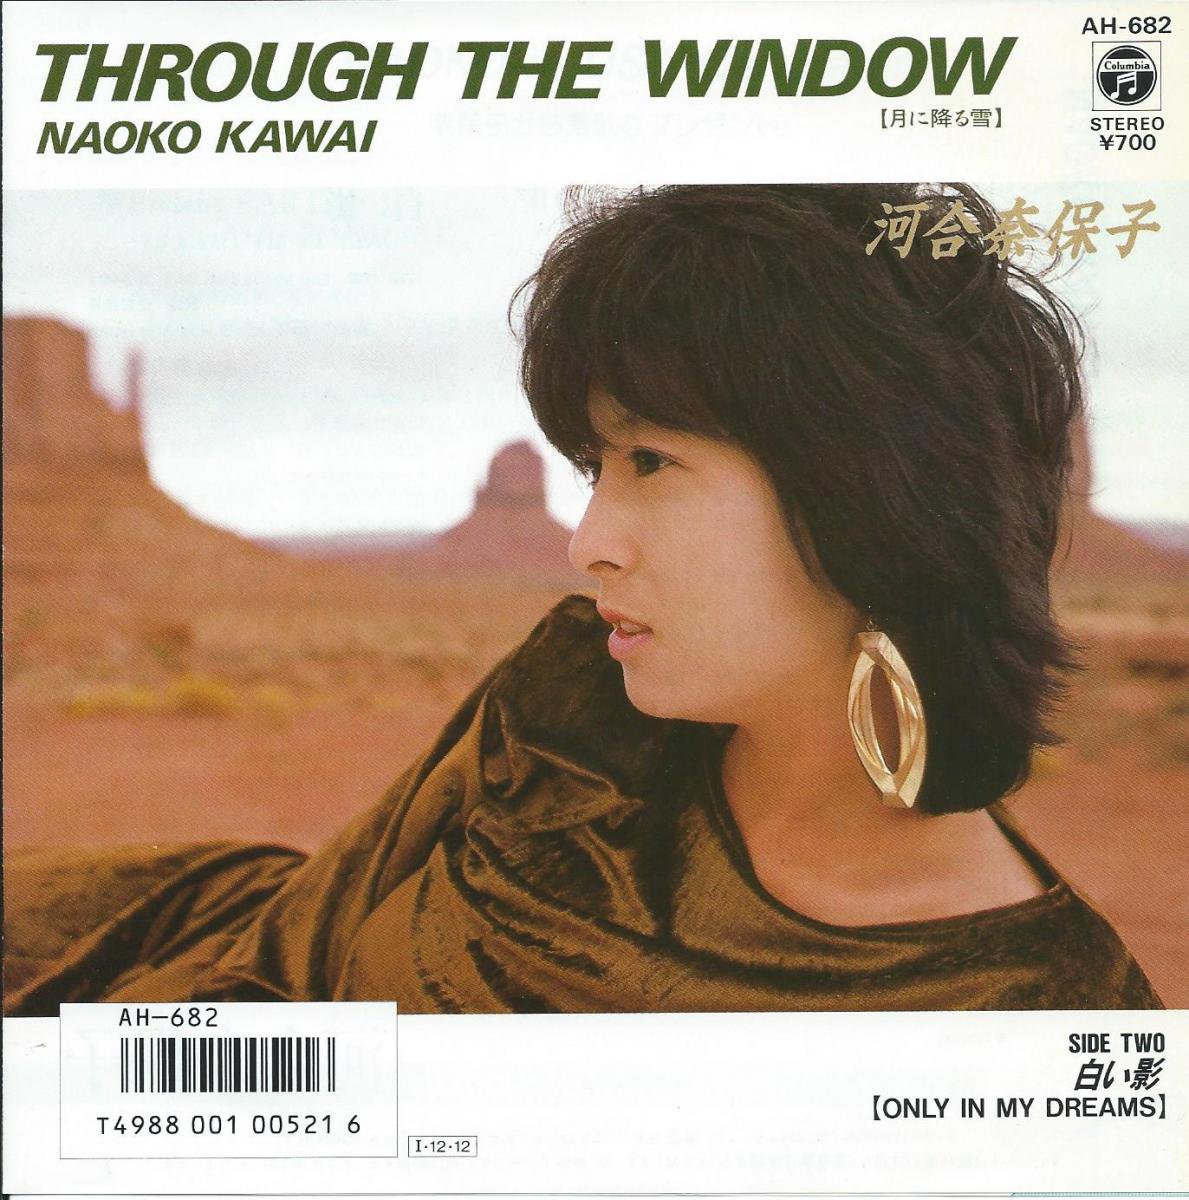 河合奈保子 Naoko Kawai Through The Window 月に降る夜 白い影 Only In My Dreams 7 Hip Tank Records